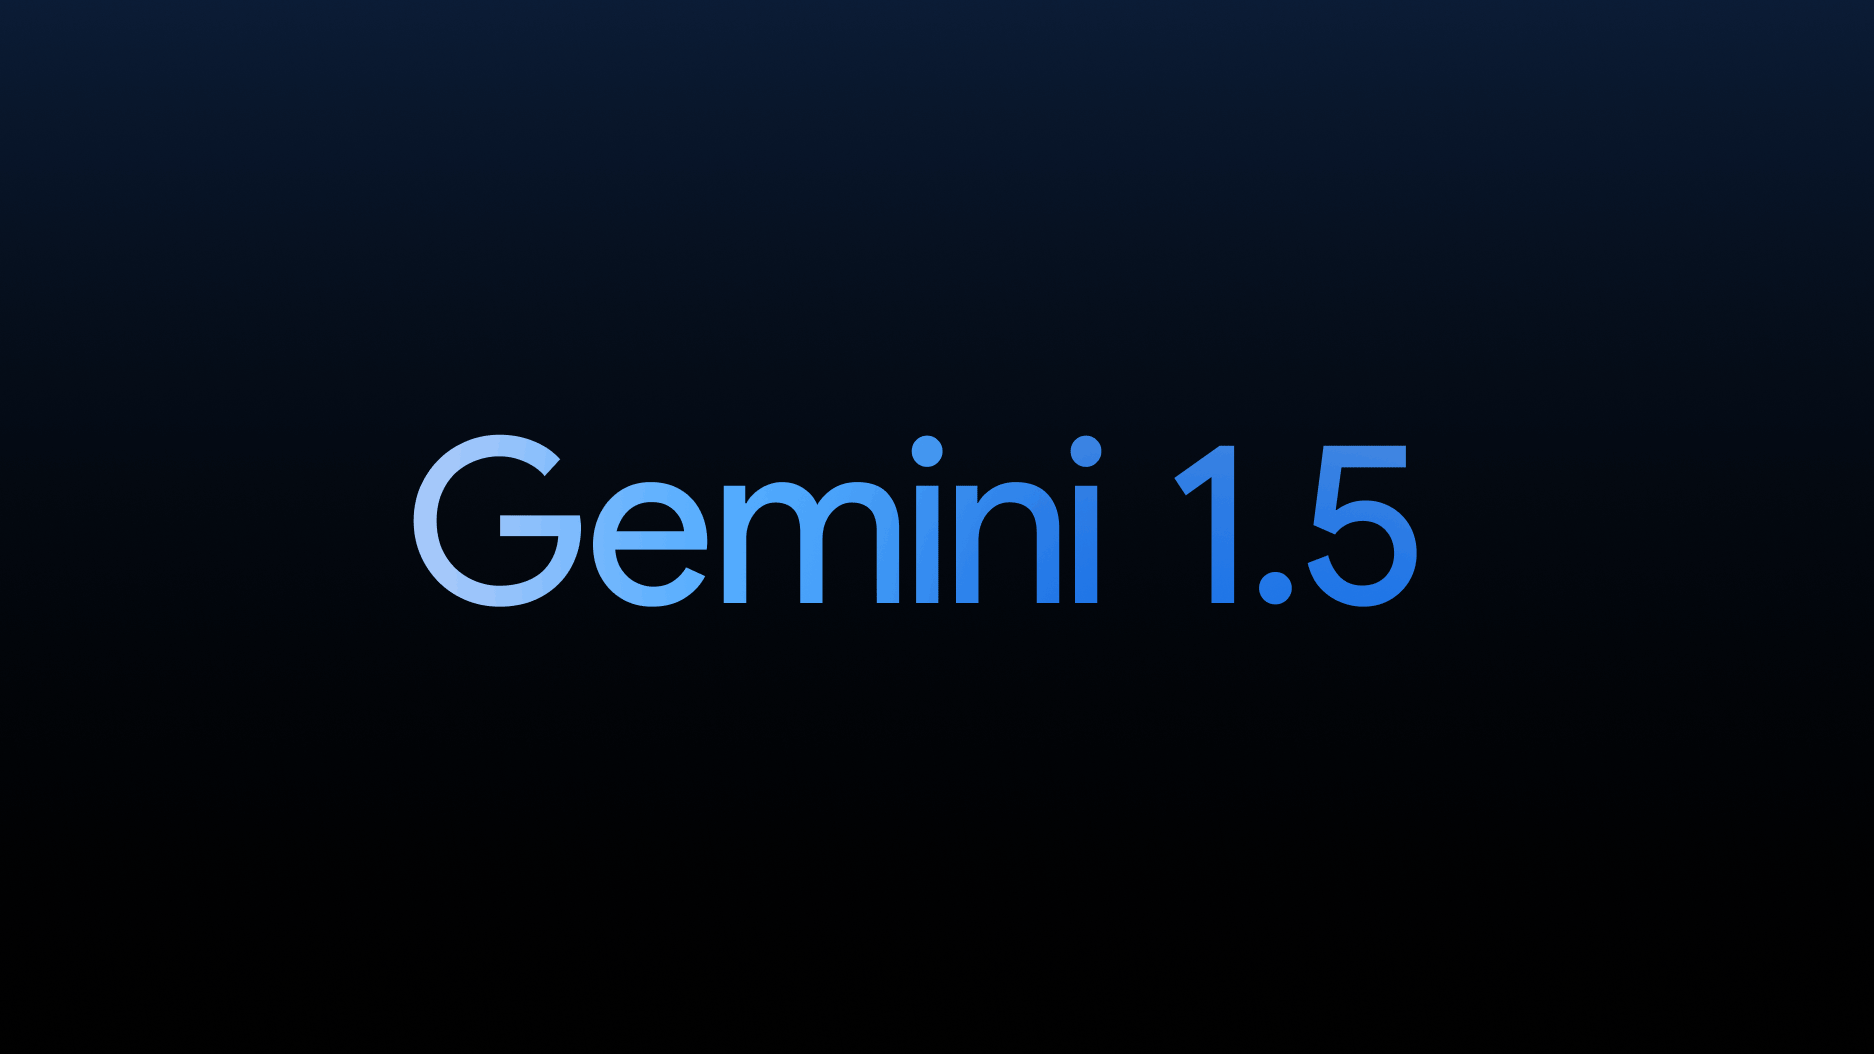 Gemini 1.5: Google stellt neues KI-Modell vor, das GPT-4 in einem wichtigen Punkt übertrifft